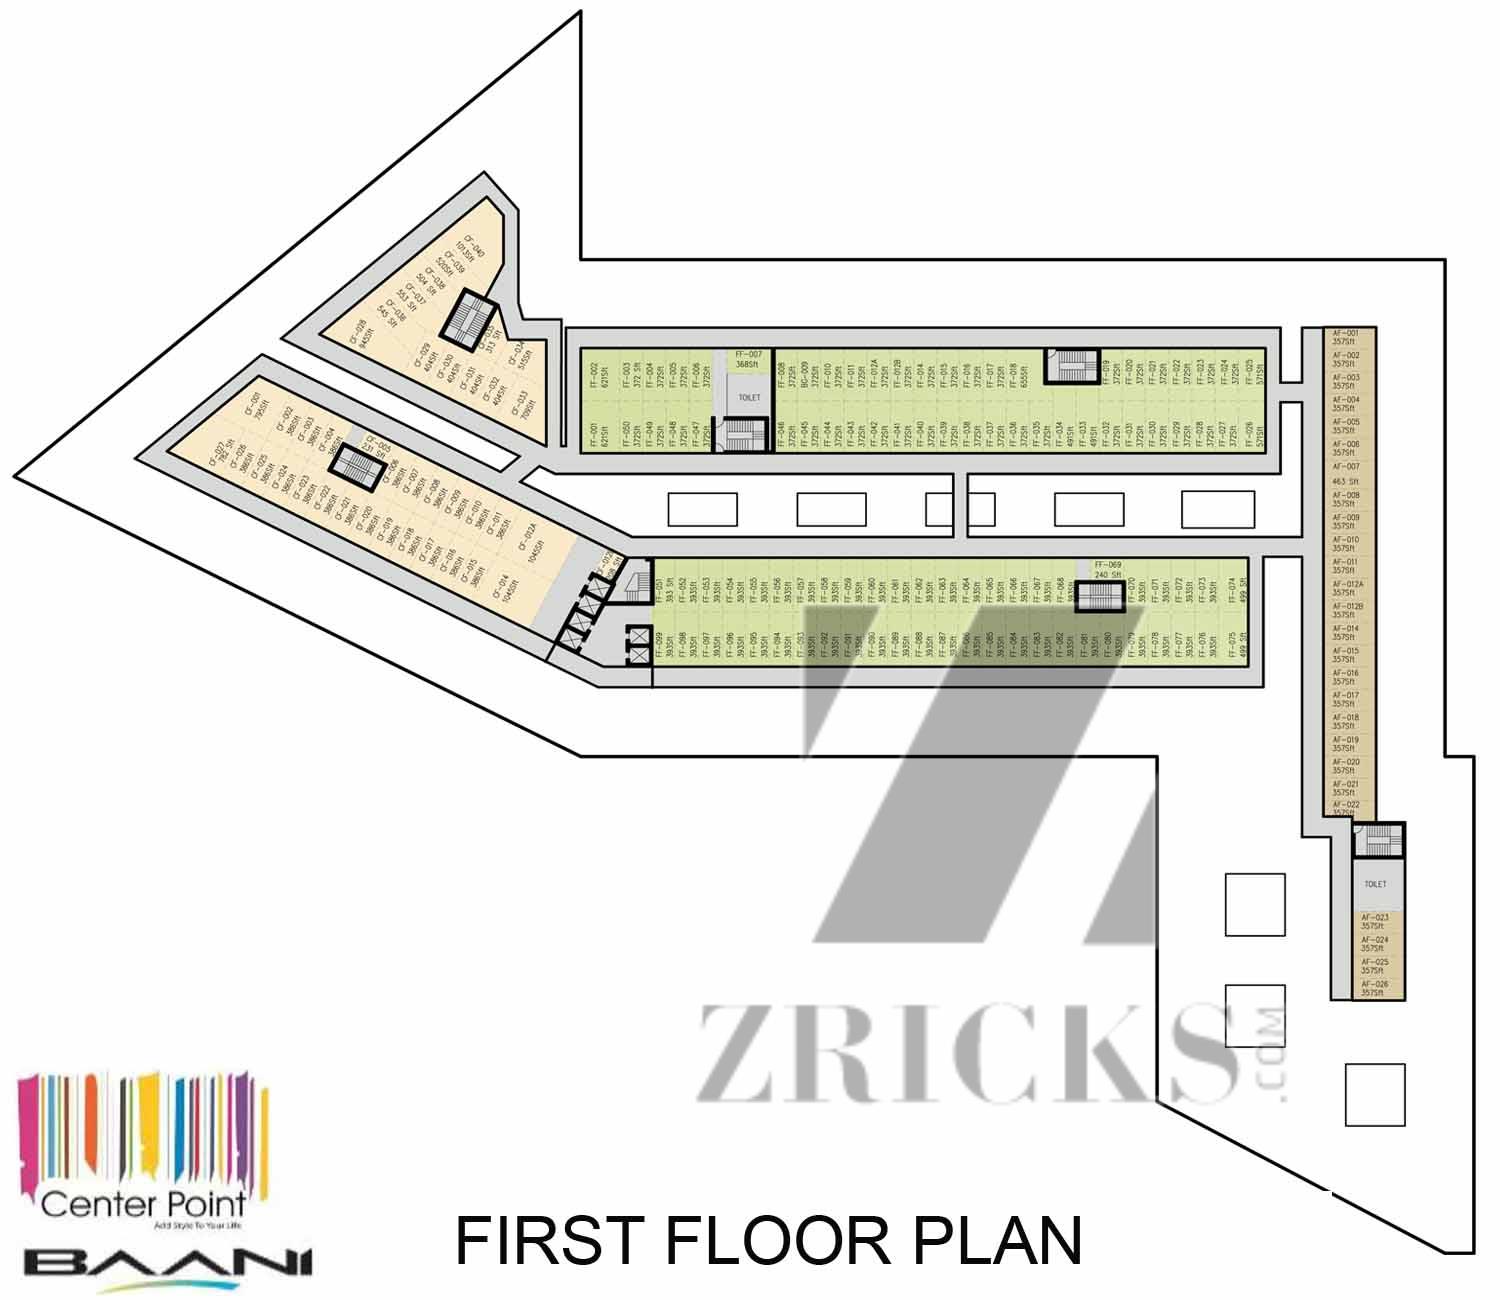 Baani Center Point Floor Plan